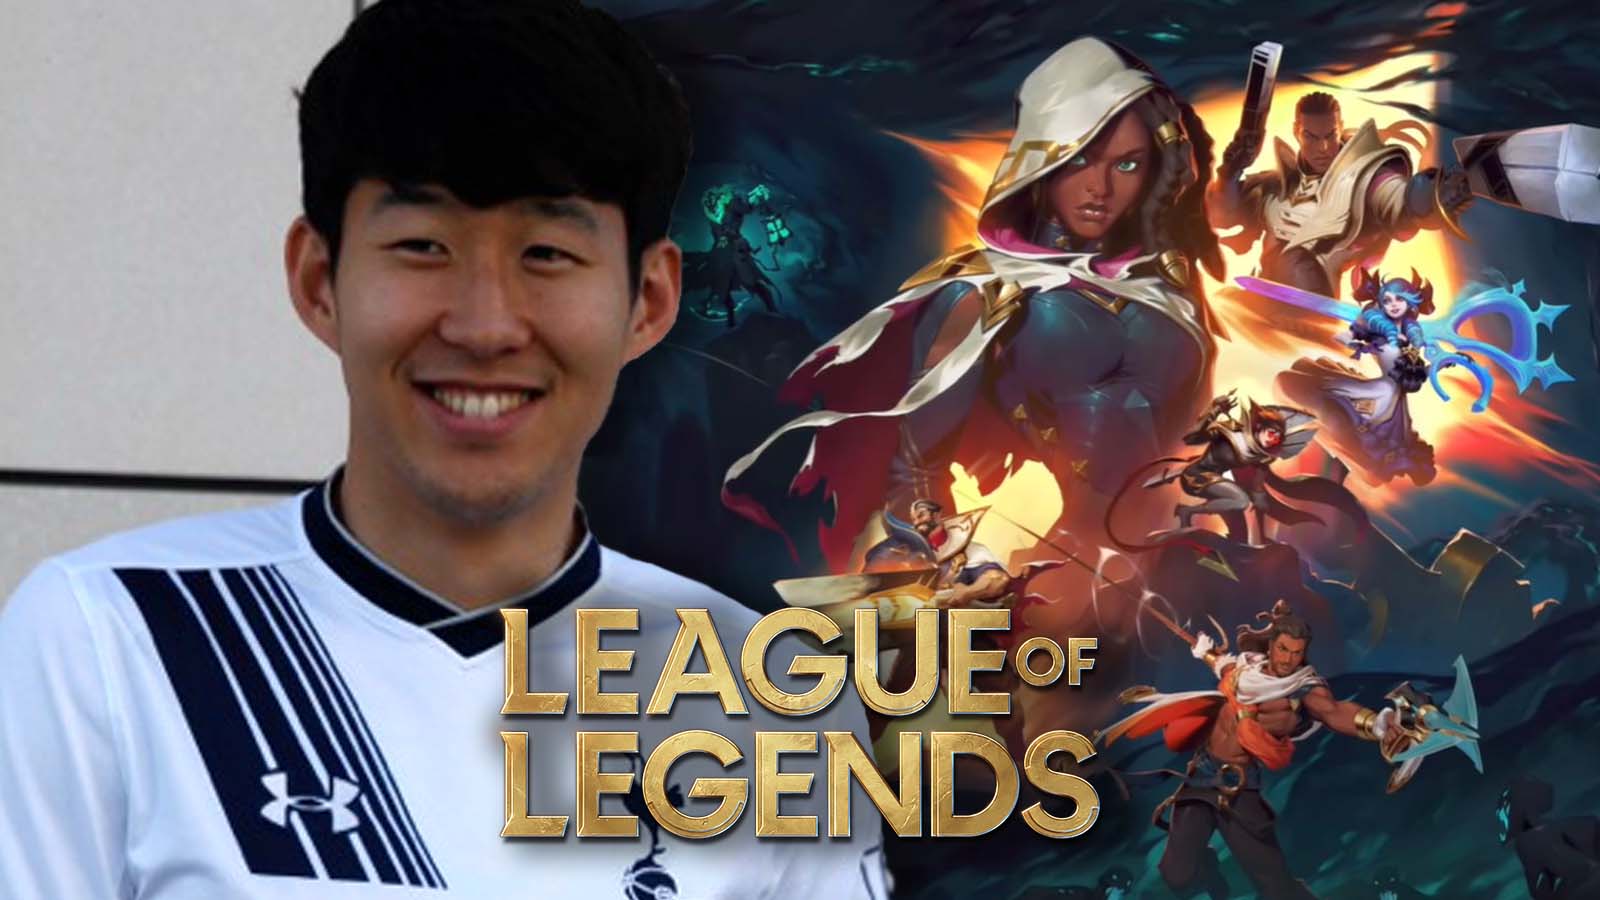 Tottenham superstar Son Heung-min reveals he plays League of Legends